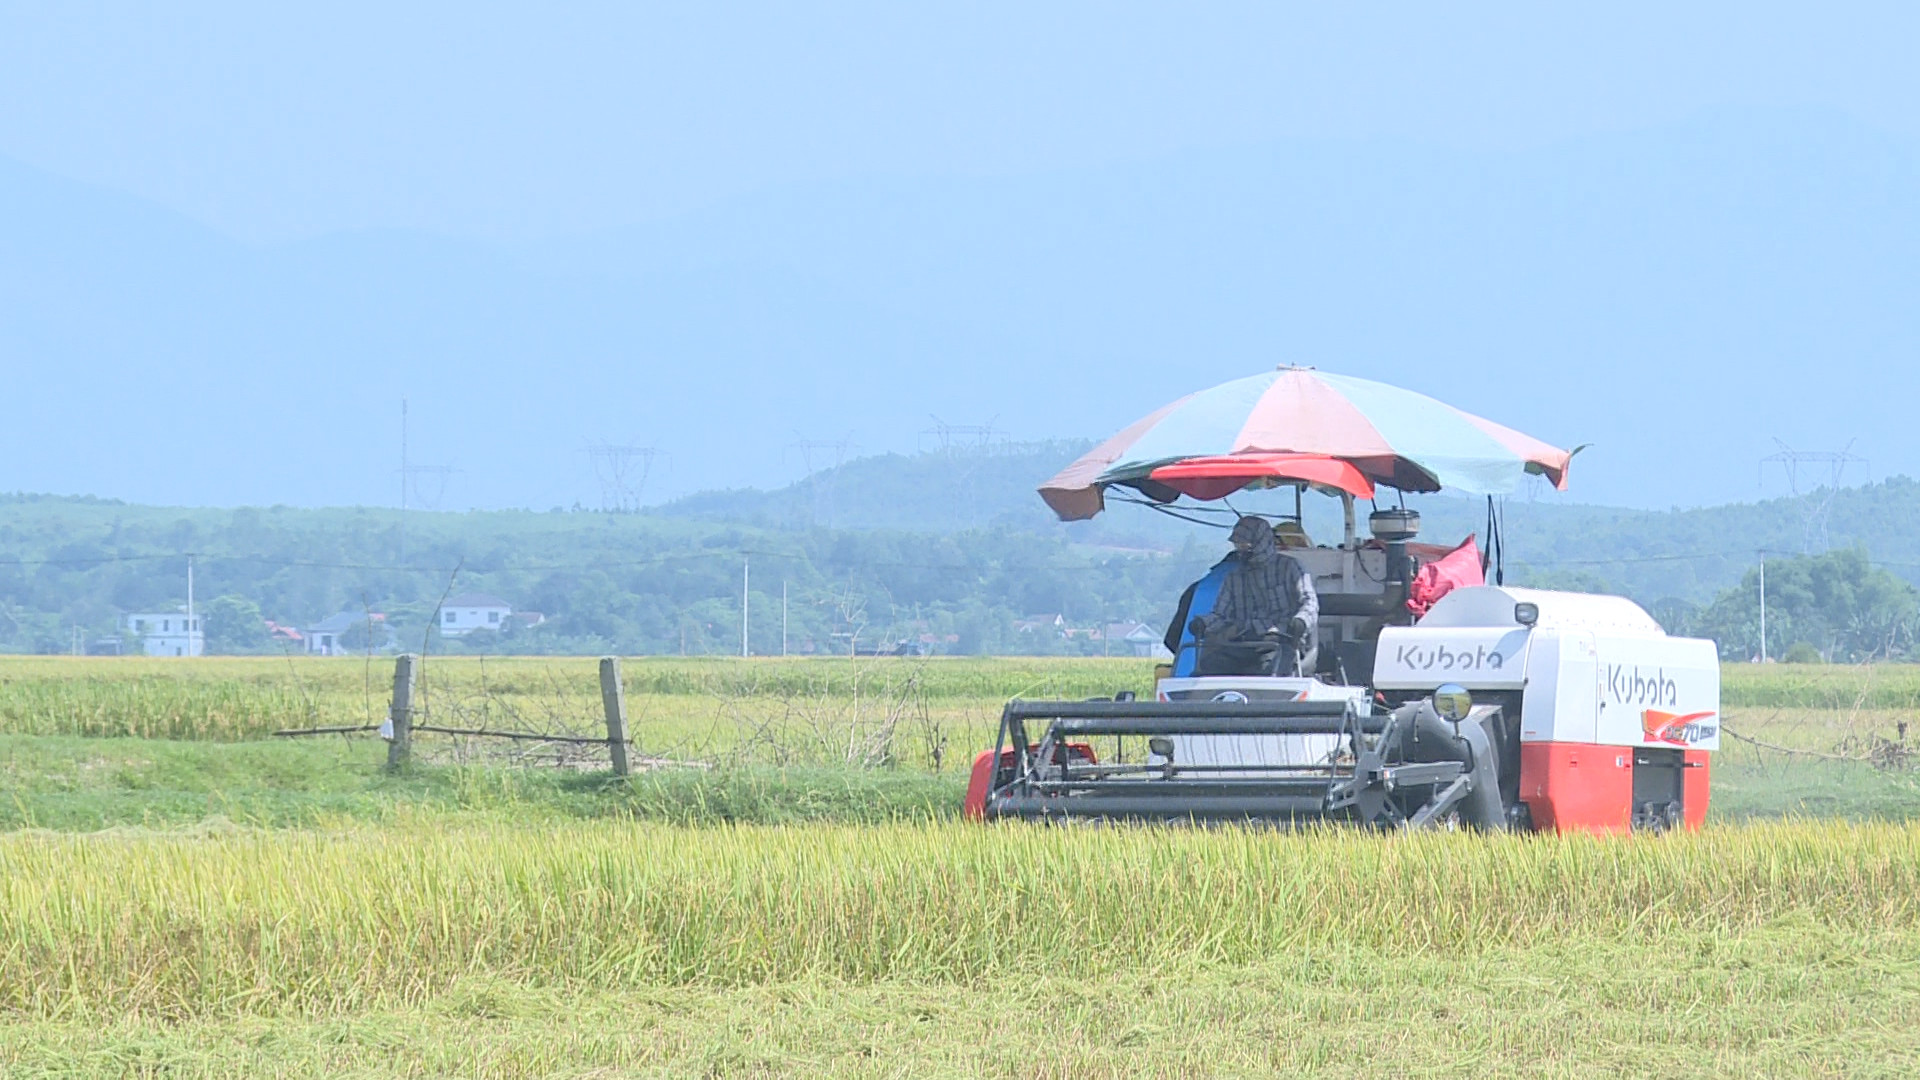 Nông dân huyện Quảng Trạch đẩy nhanh tiến độ thu hoạch lúa đông-xuân để tránh thiệt hại do thời tiết cực đoan có thể xảy ra.